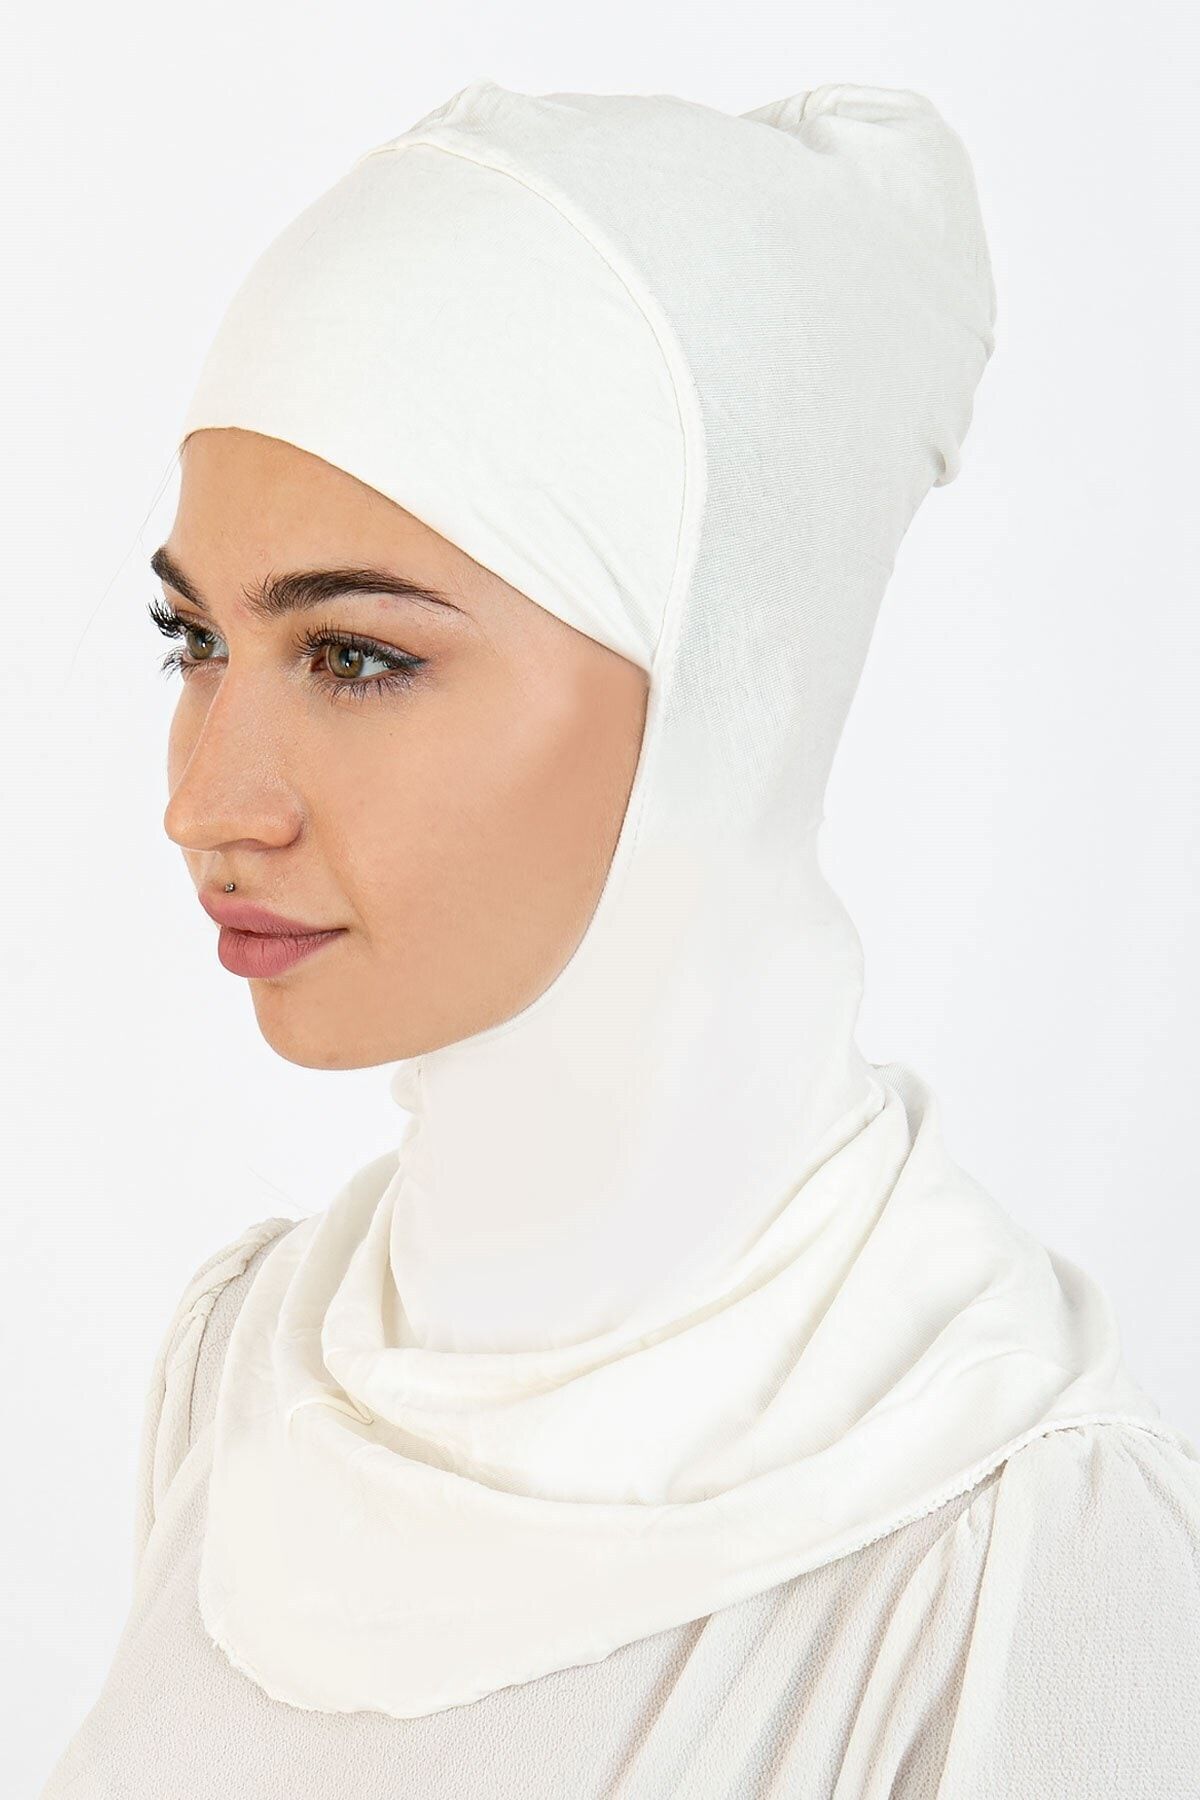 Eca Boyunluklu Hijab Bone Beyaz 03 Ebhb-st224